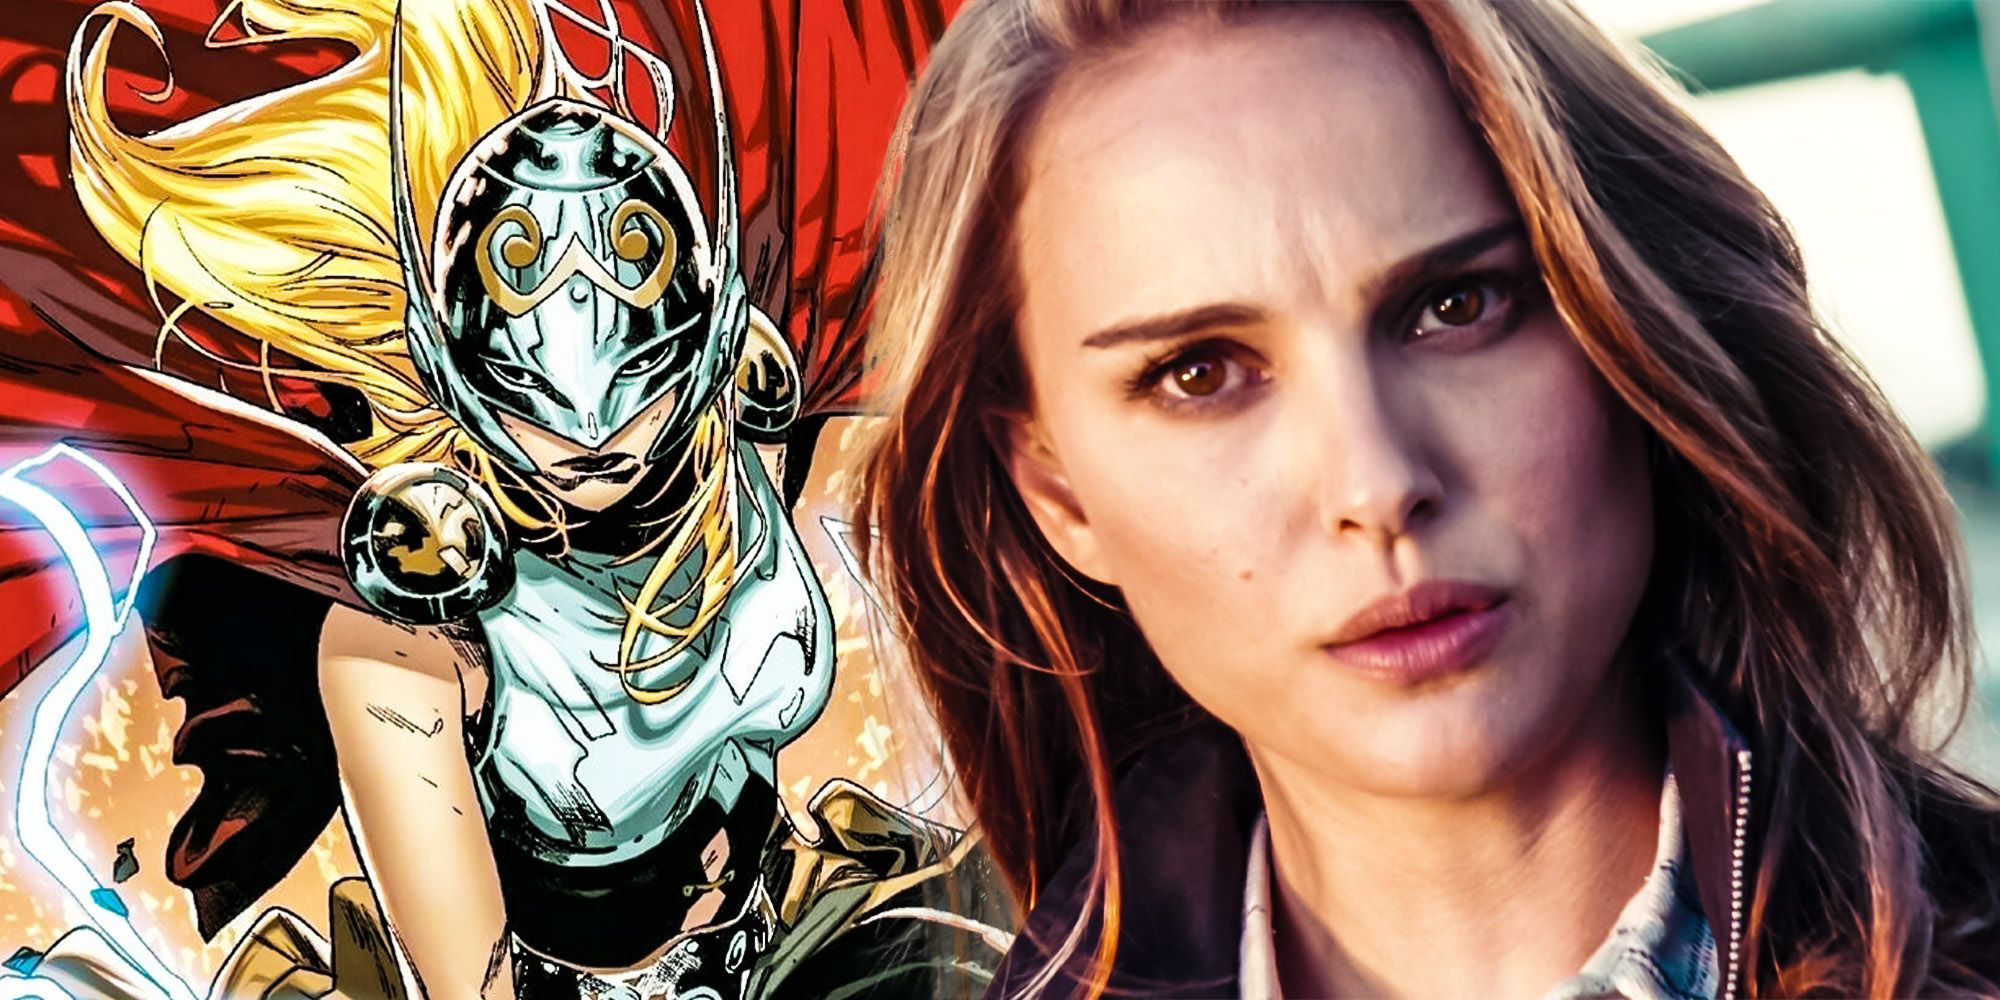 El cosplay de Jane Foster Thor confirma que el MCU debe permanecer con precisión cómica